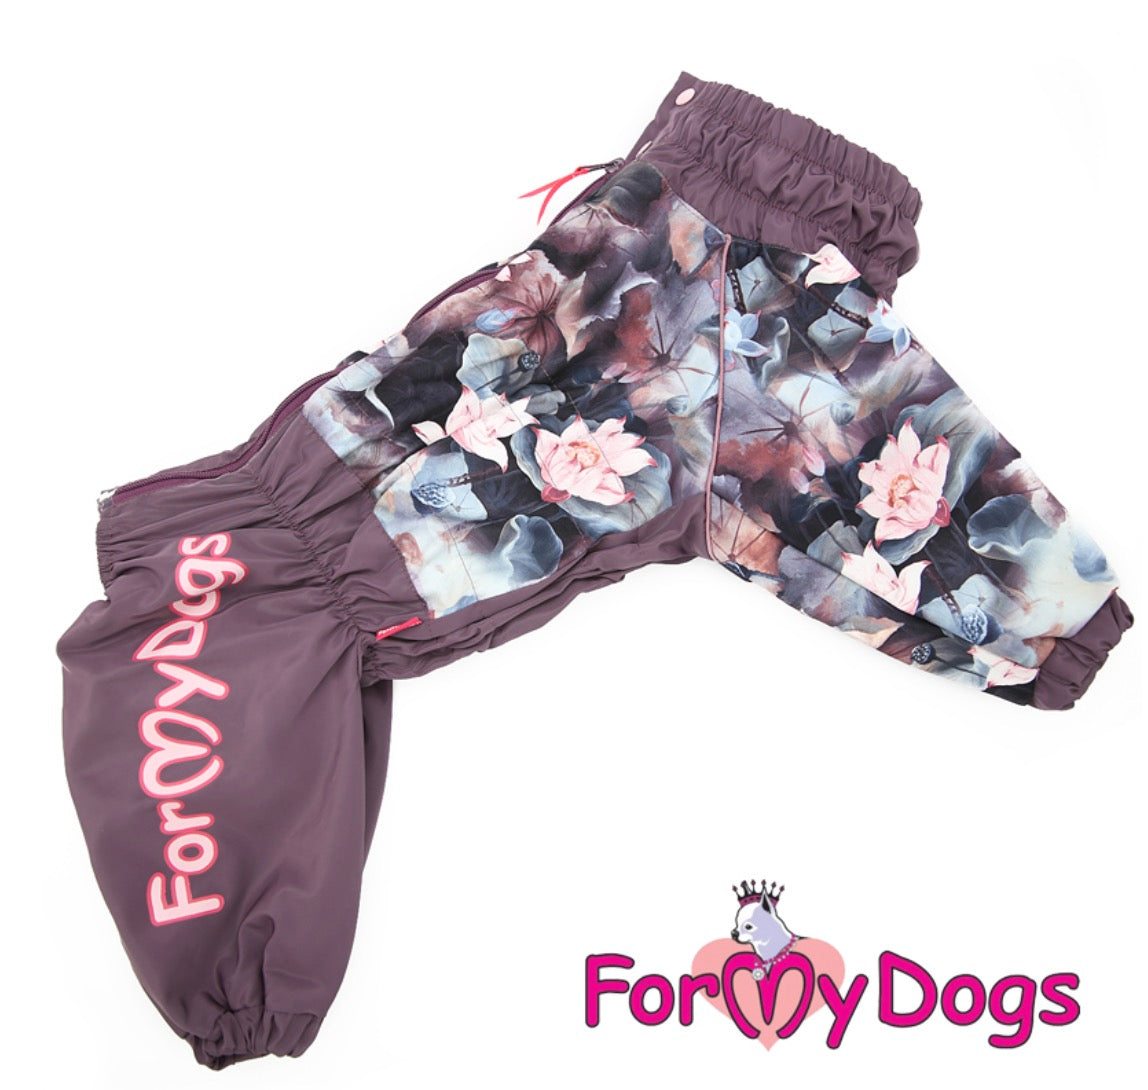 ForMyDogs - "Lotos" koiran sadehaalari, keskikokoinen/iso koira, nartun malli